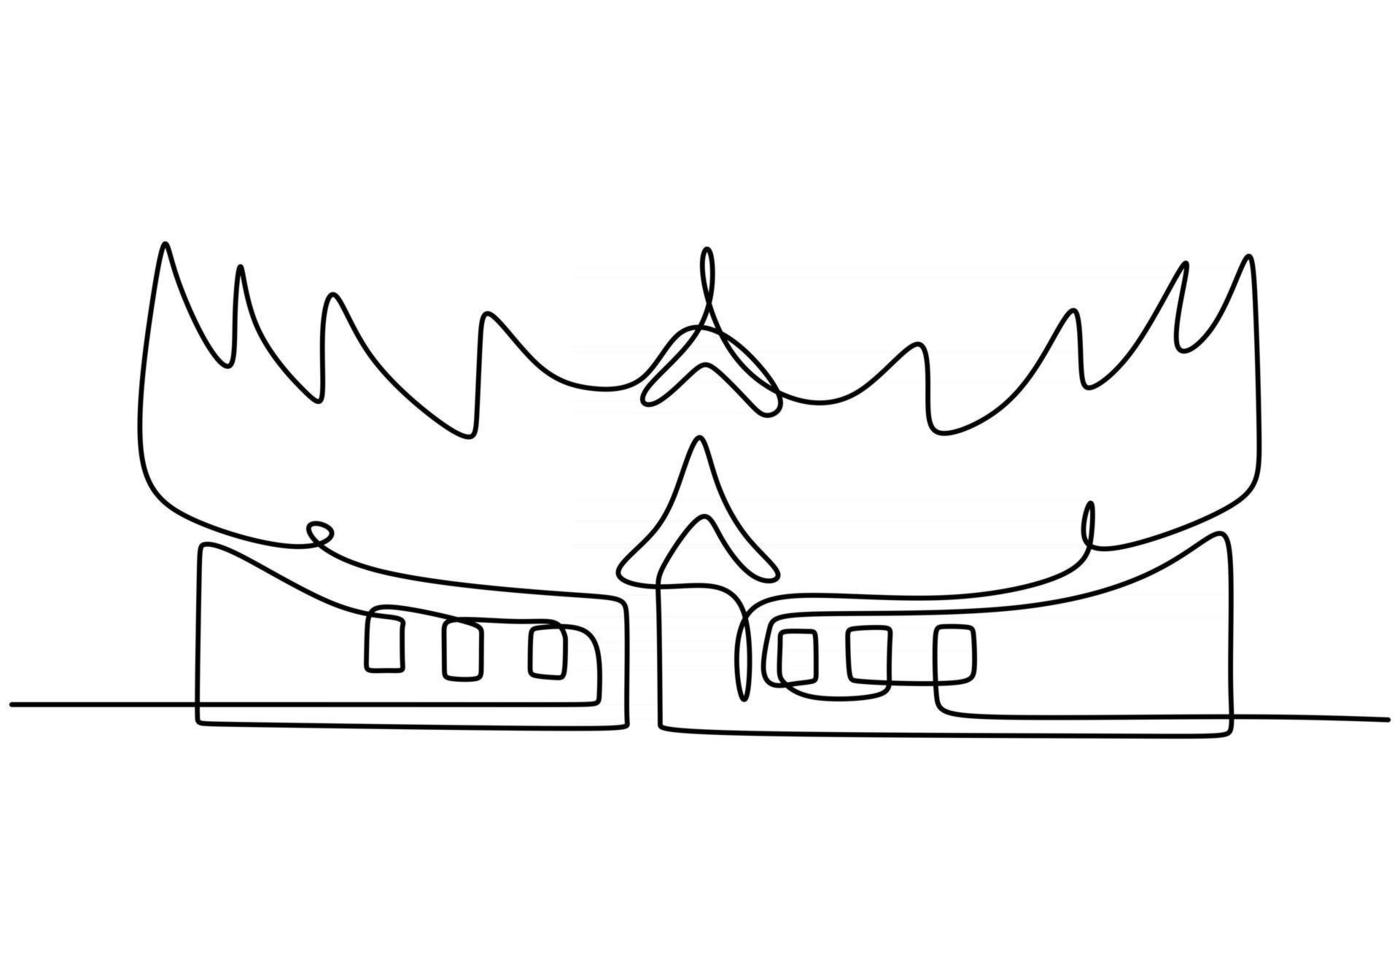 continua una linea di edificio tradizionale asiatico. casa classica in un'unica linea isolata su sfondo bianco. vettore